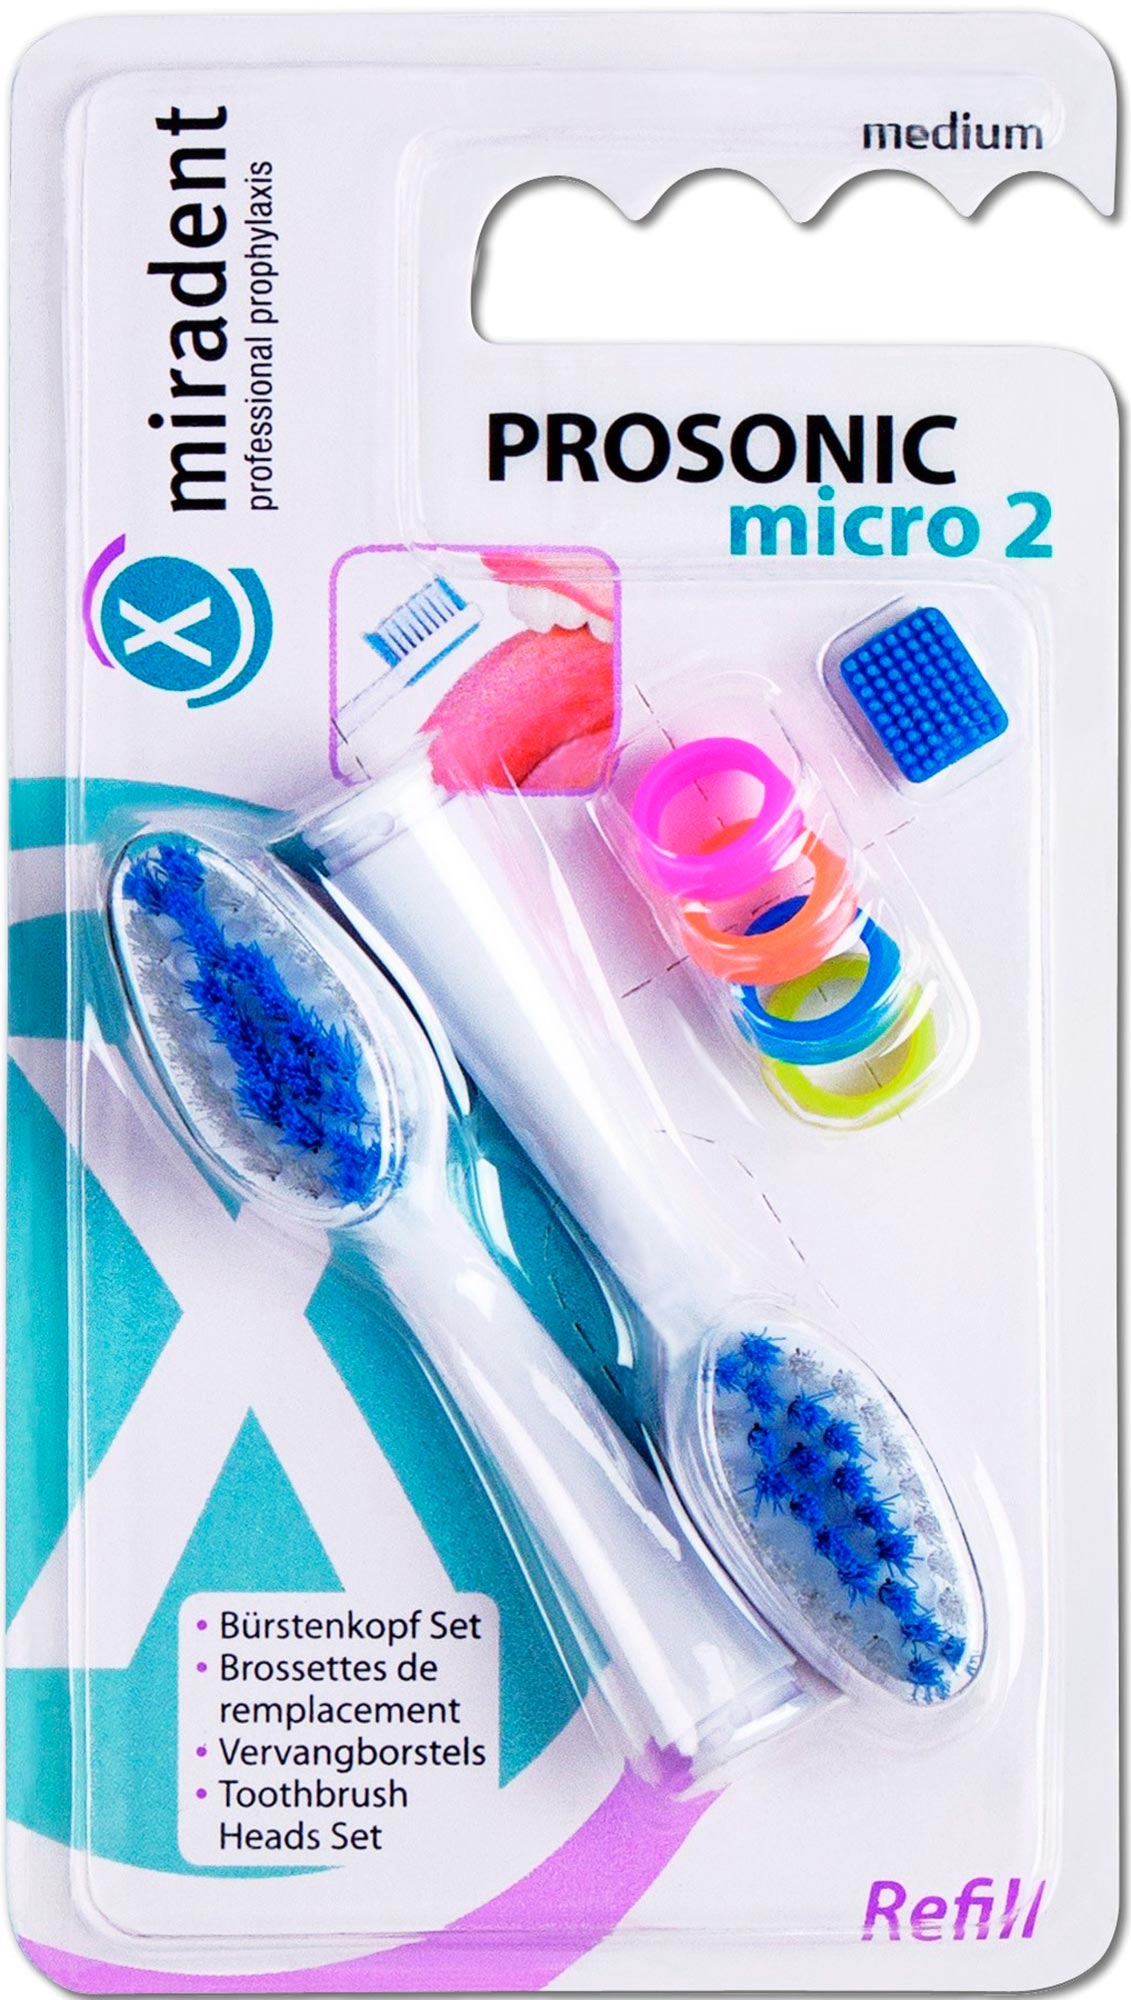 Купить Насадки для зубных щёток Miradent PROSONIC MICRO 2, Hager&Werken